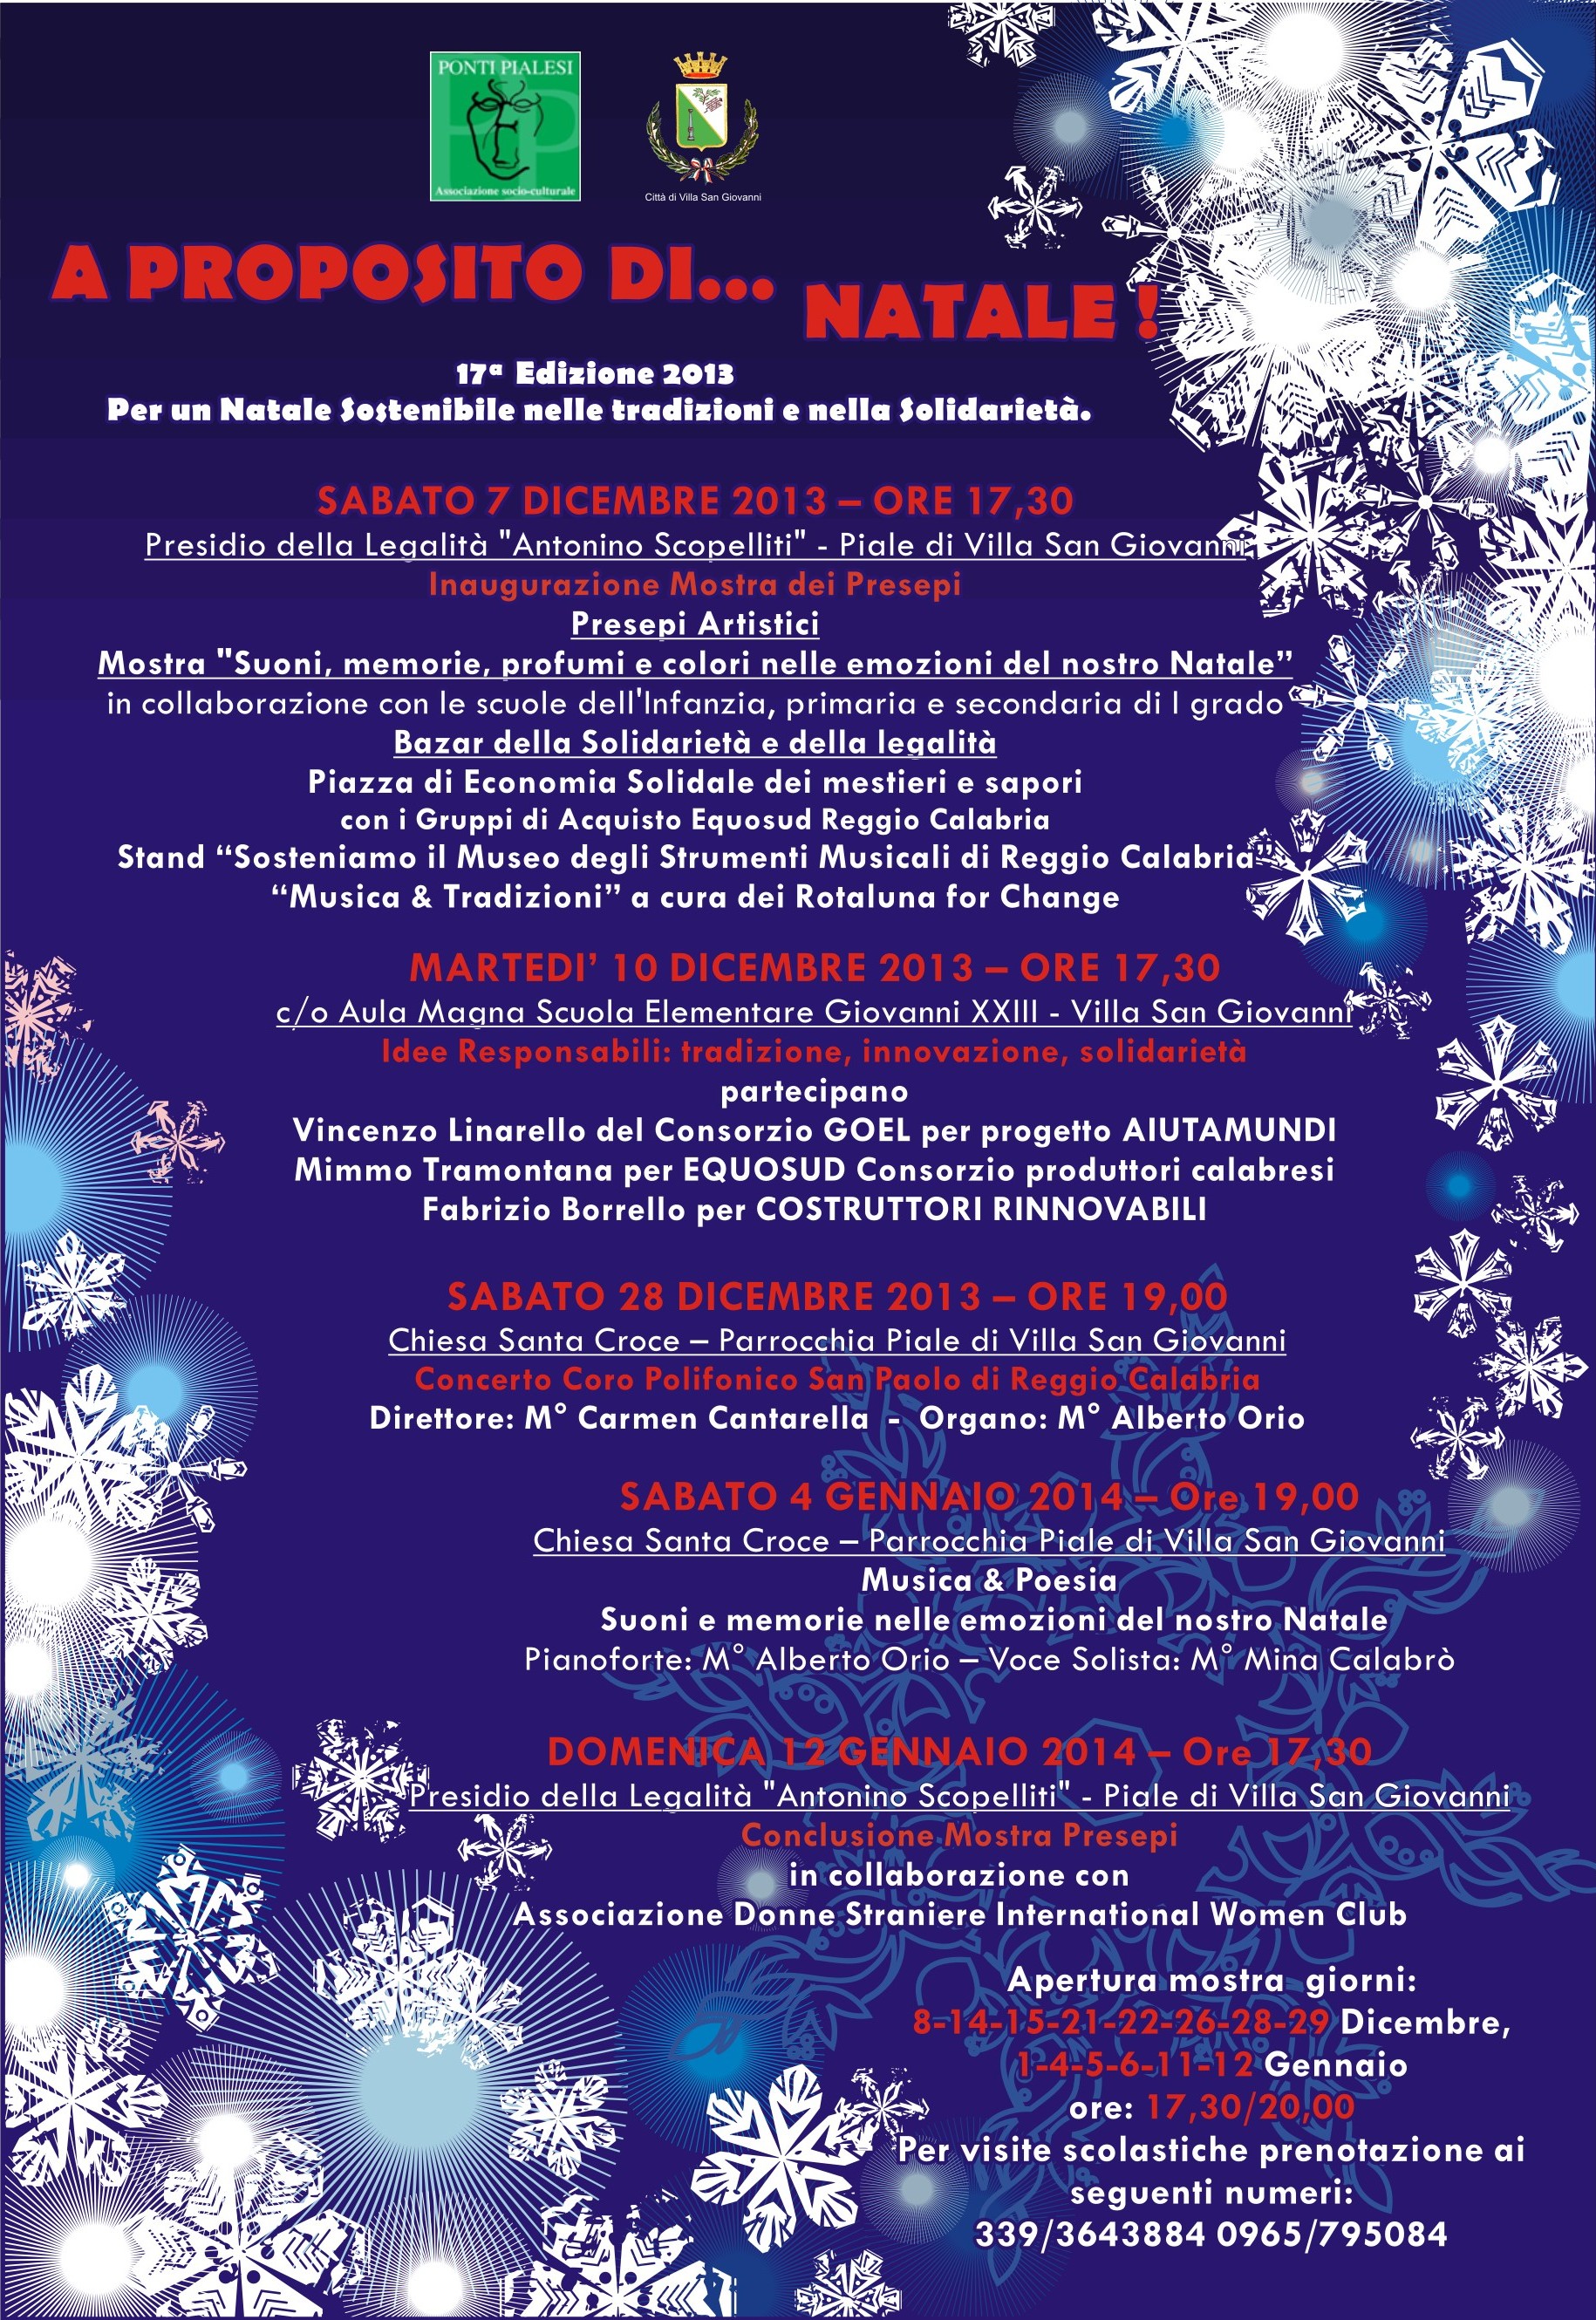 Ponti Pialesi - Programma A Proposito di Natale 2013